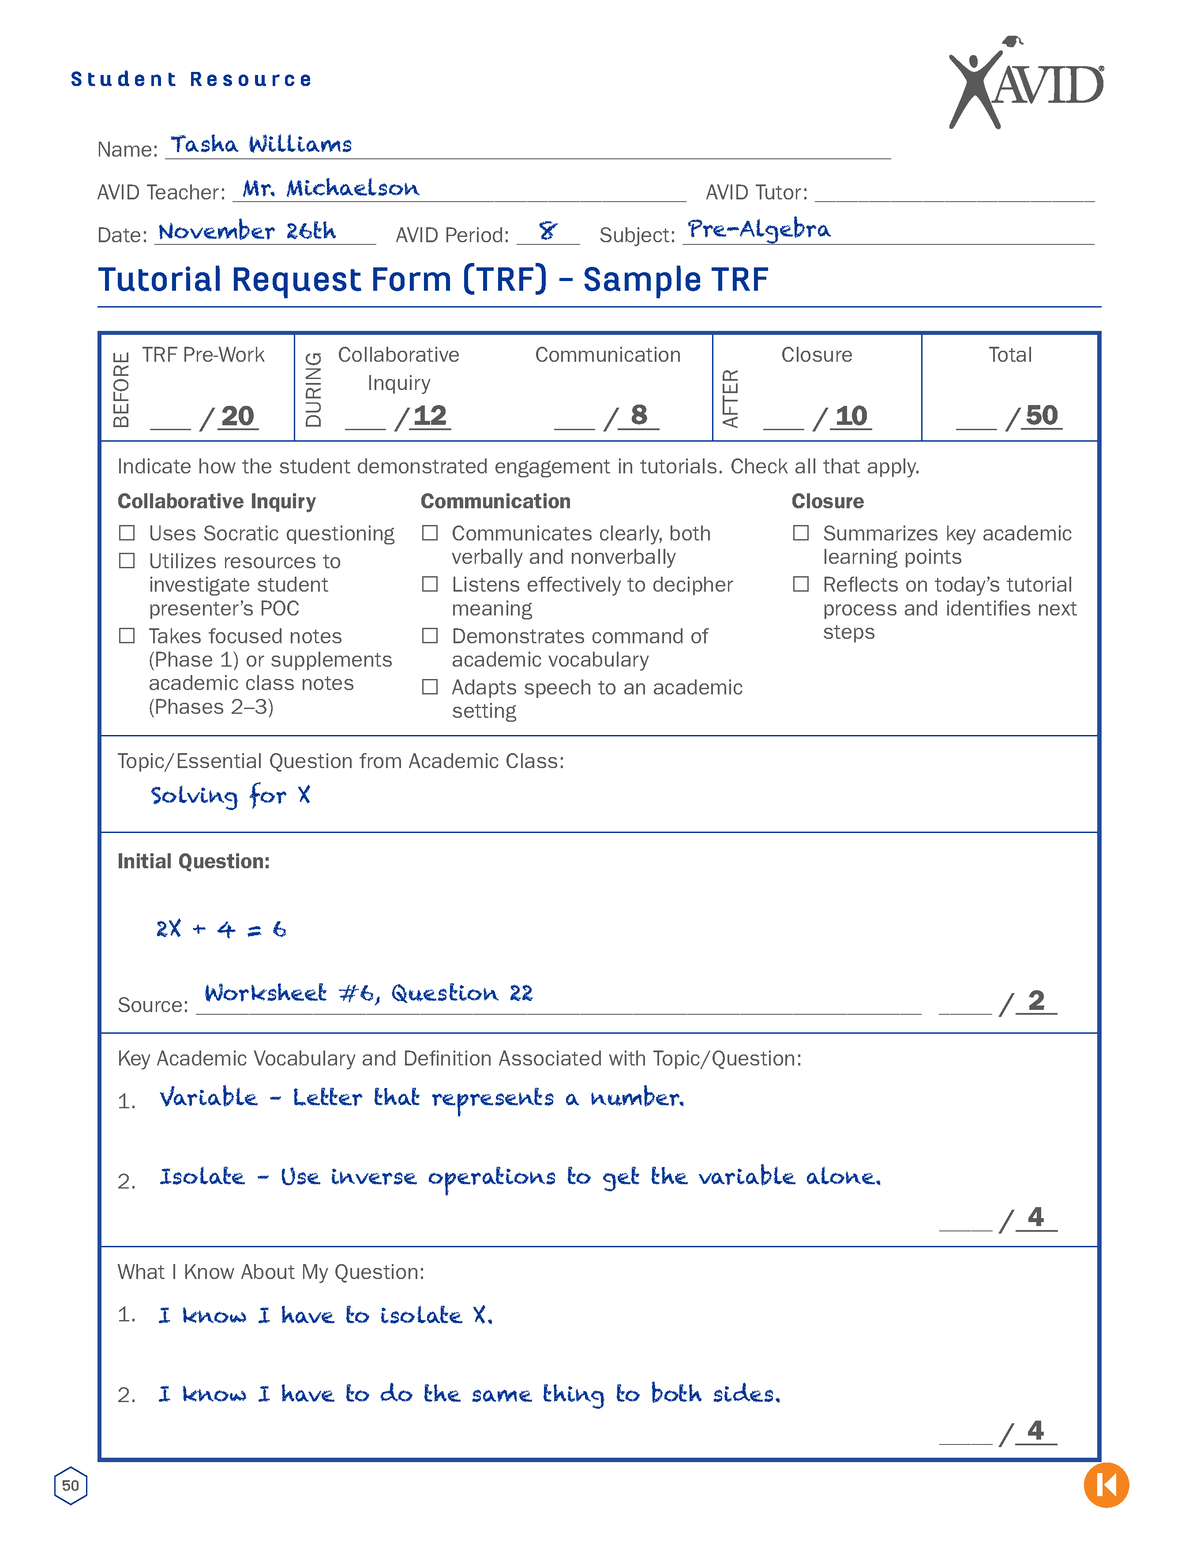 Sample TRFs AVID 1 50 Tasha Williams Solving for X Variable Letter